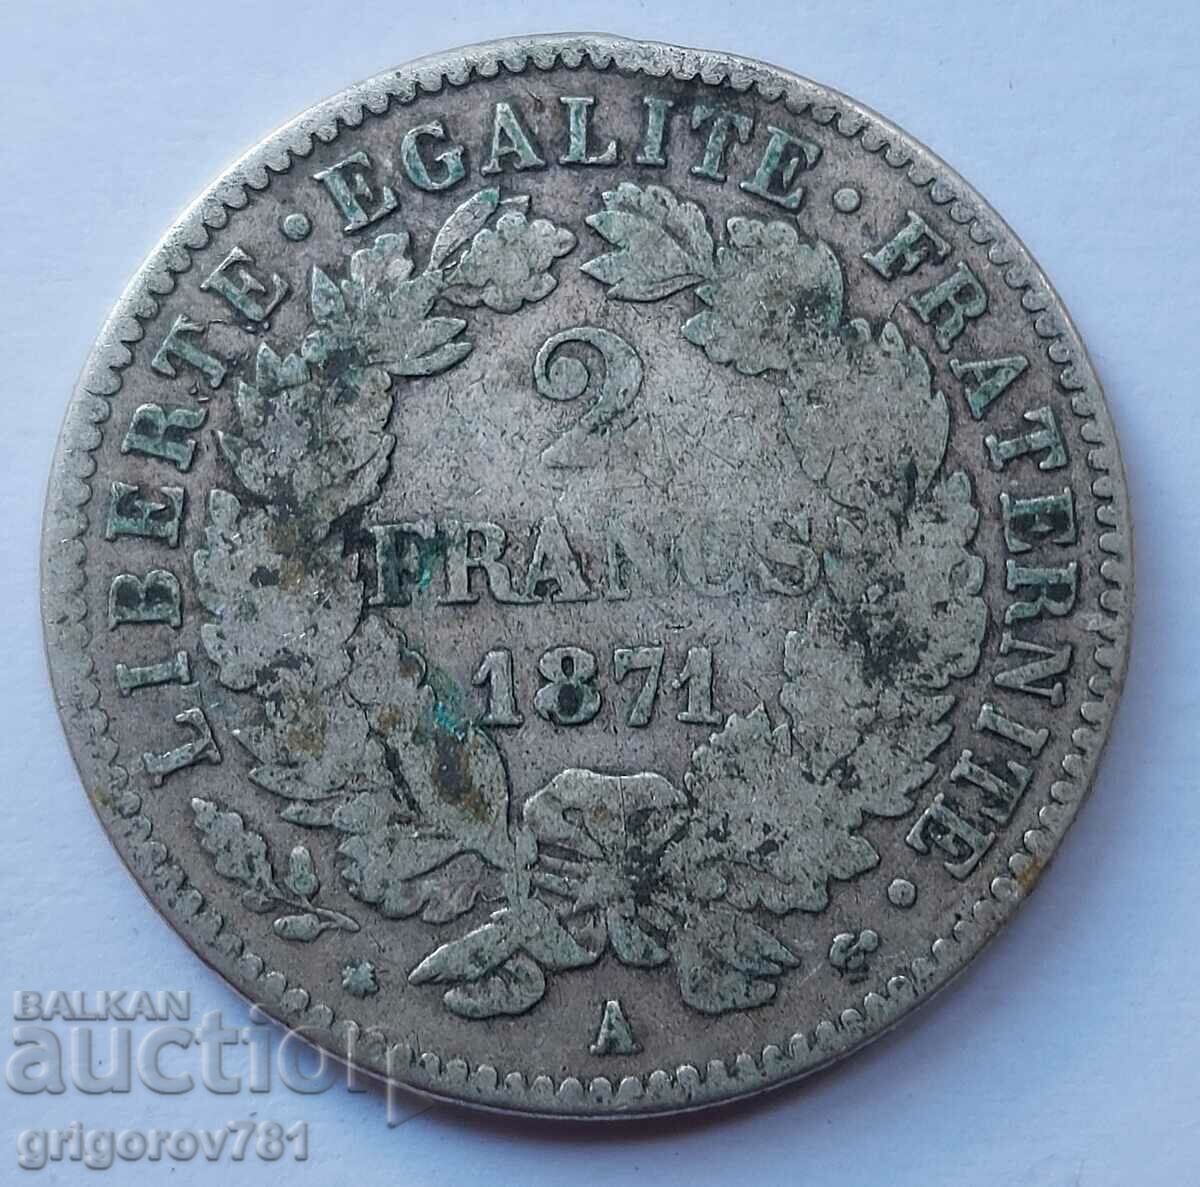 Ασημένιο 2 φράγκα Γαλλία 1871 Α - ασημένιο νόμισμα №26